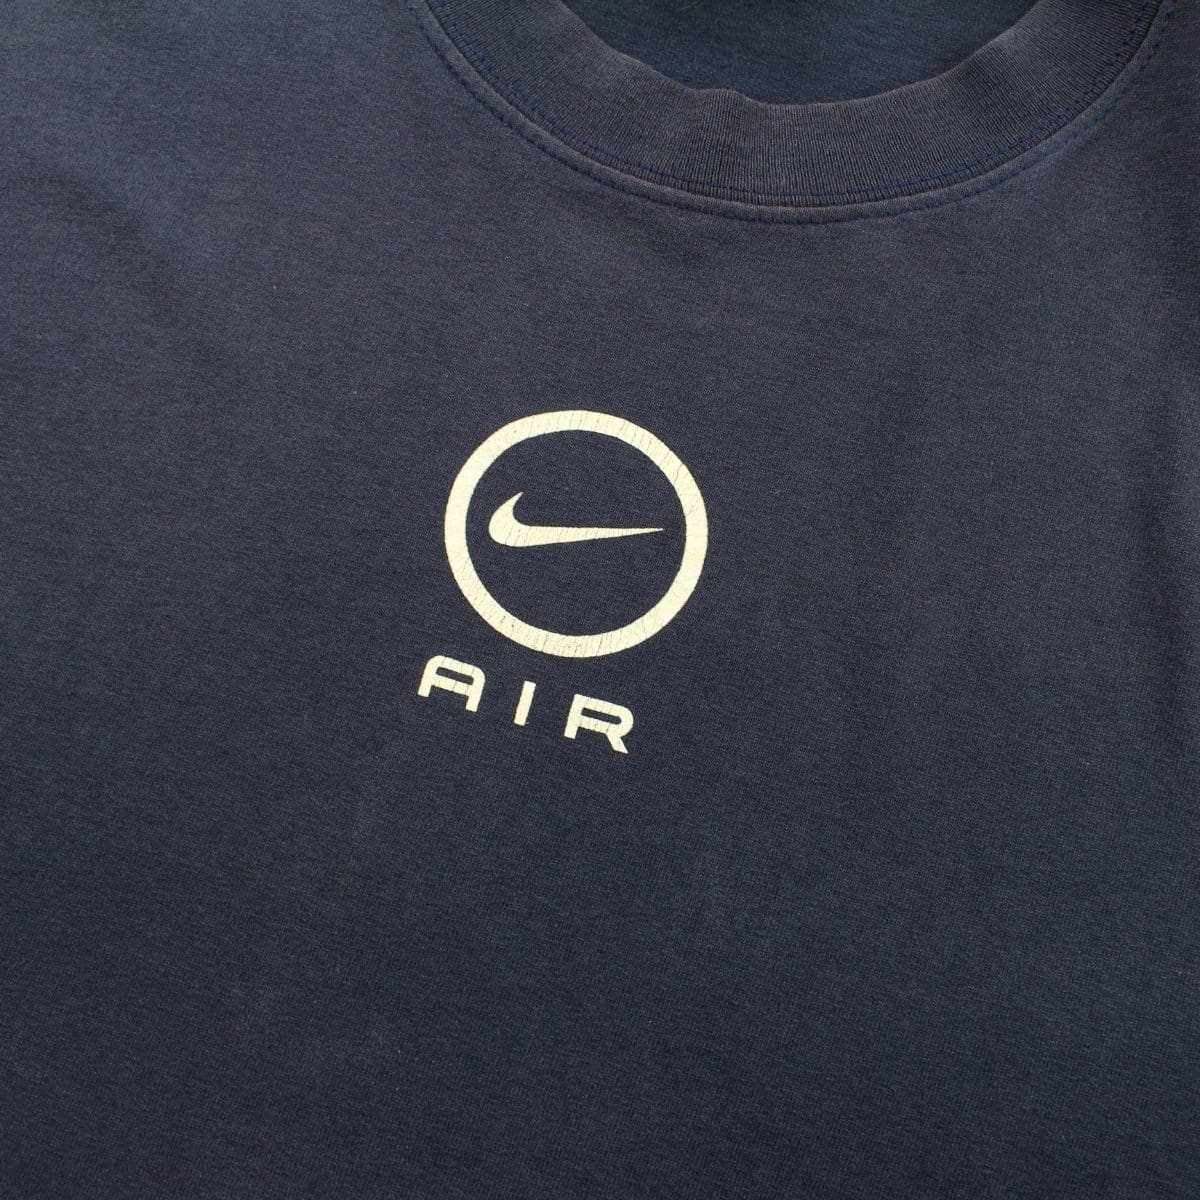 nike air logo shirt